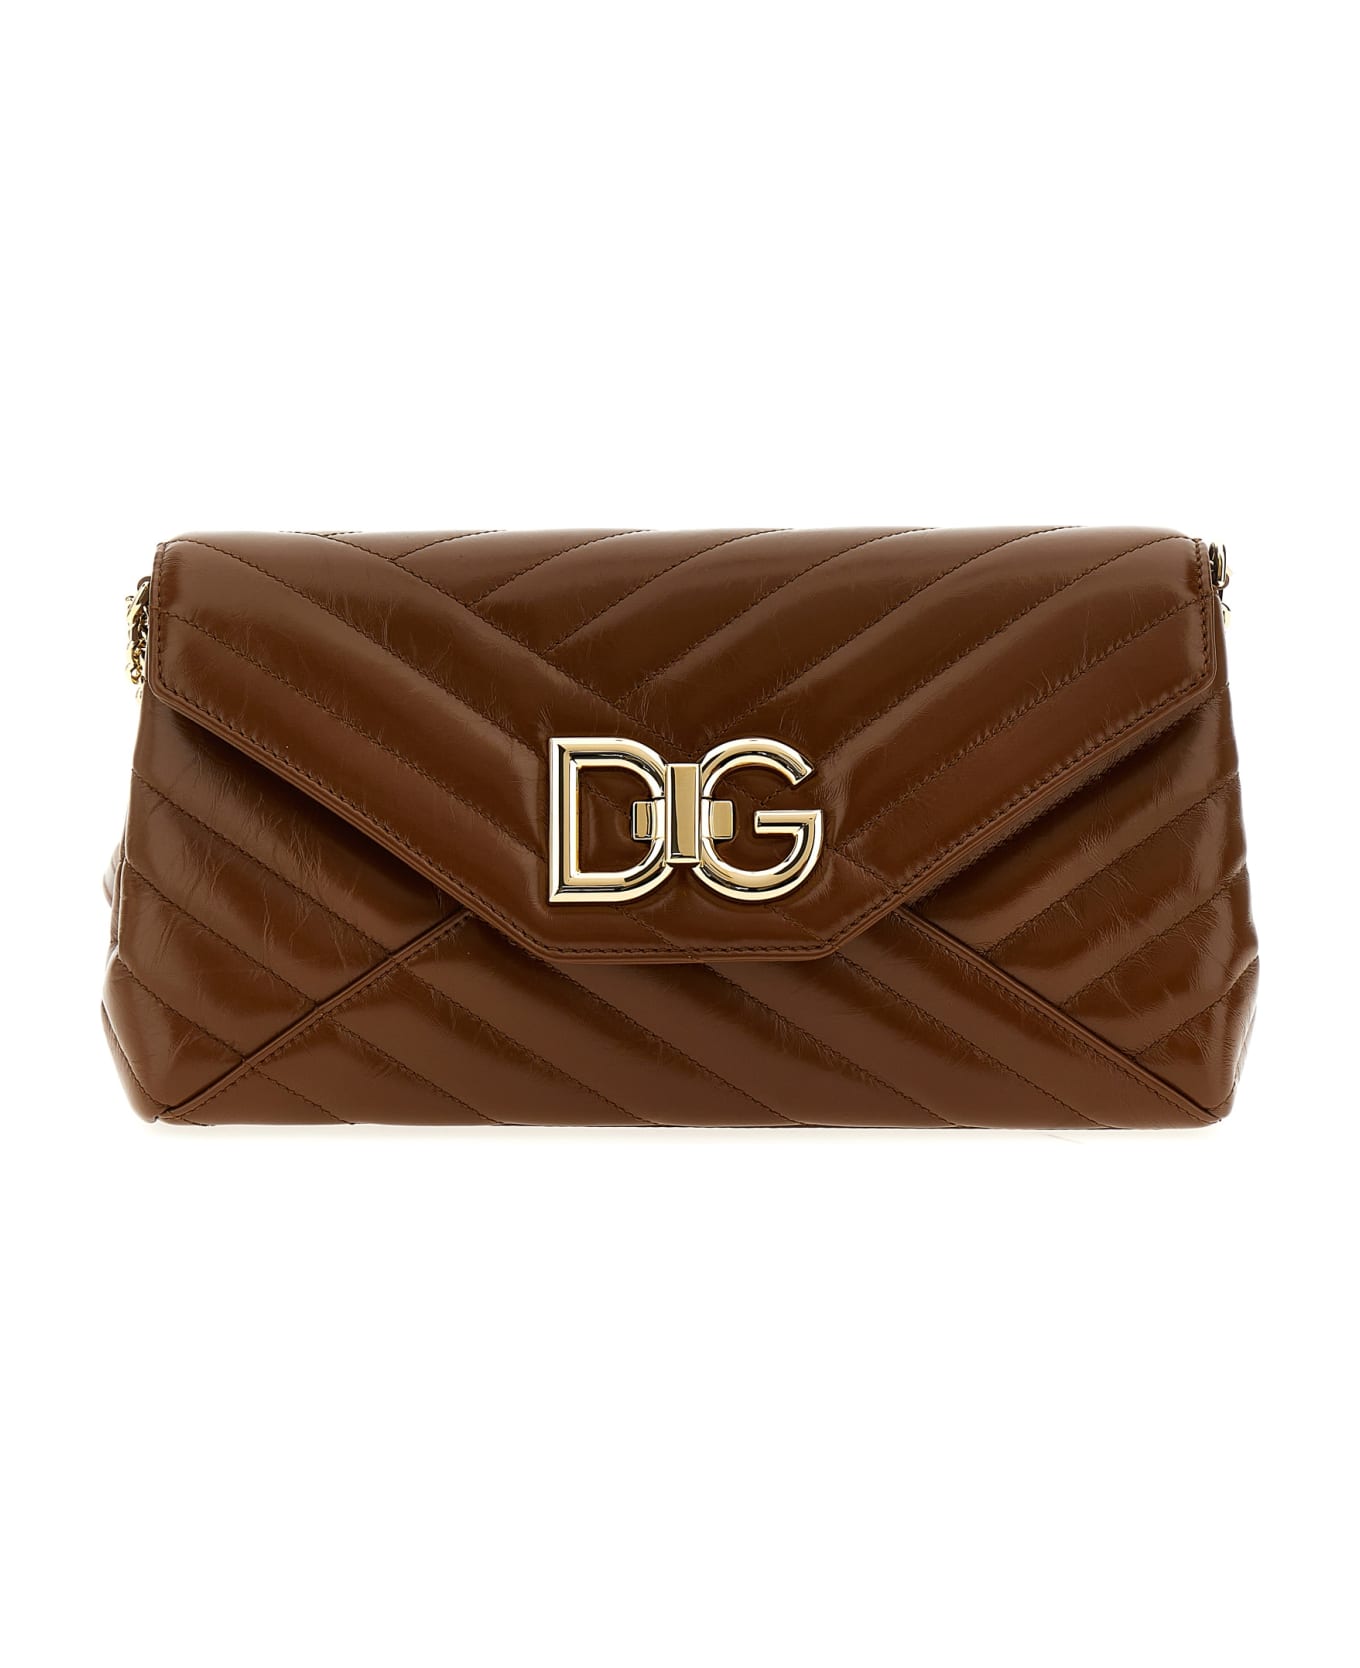 Dolce & Gabbana Leather Shoulder Strap - Brown